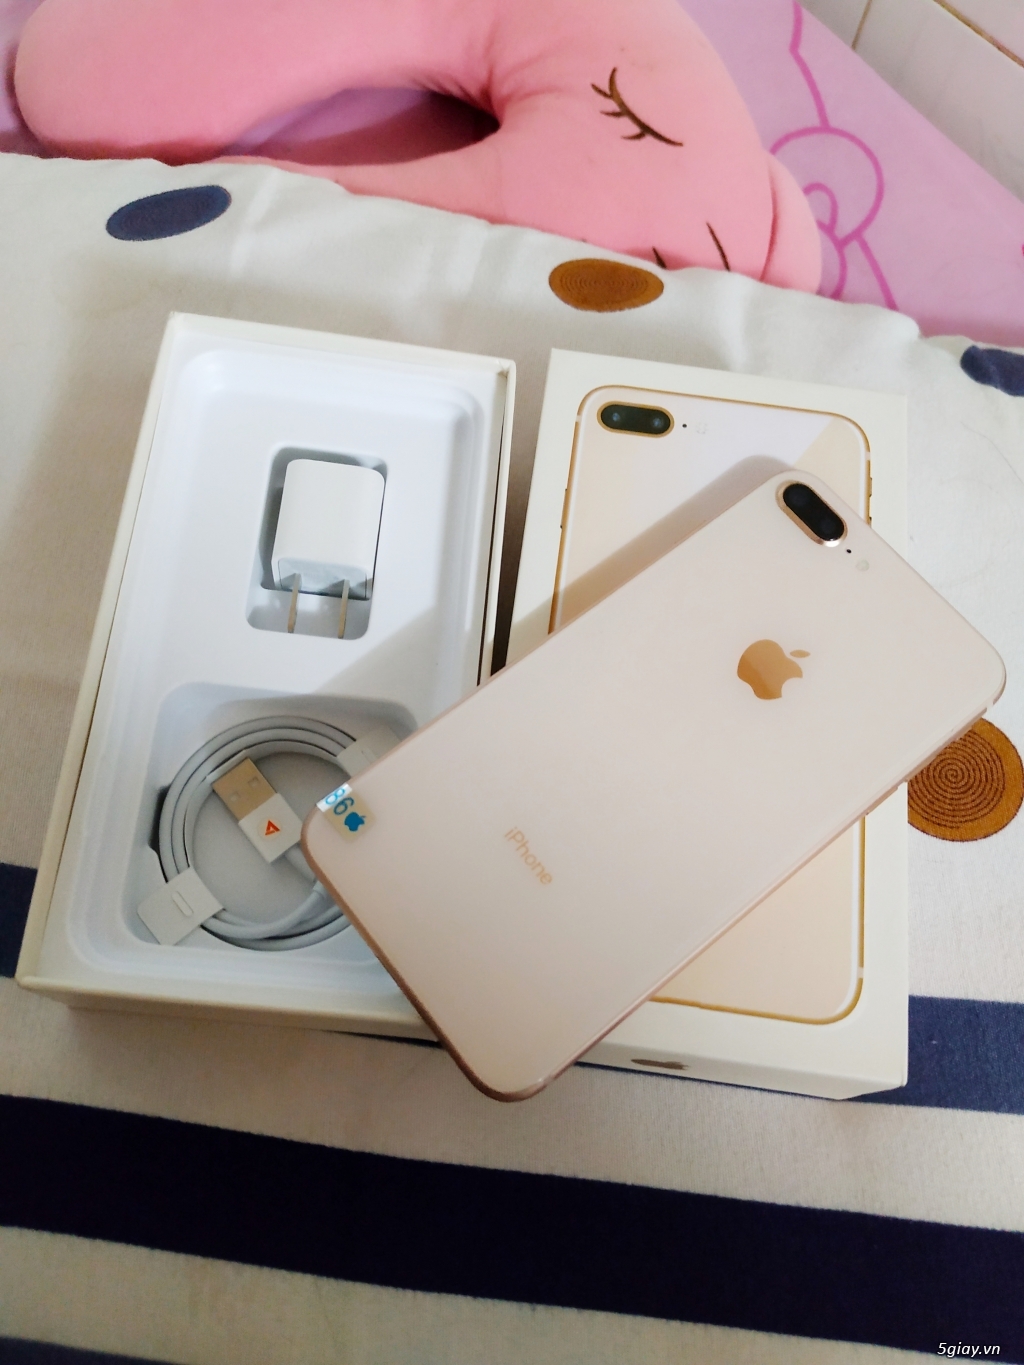 Apple Iphone 8 Plus 64GB Vàng Hồng quốc tế - 1